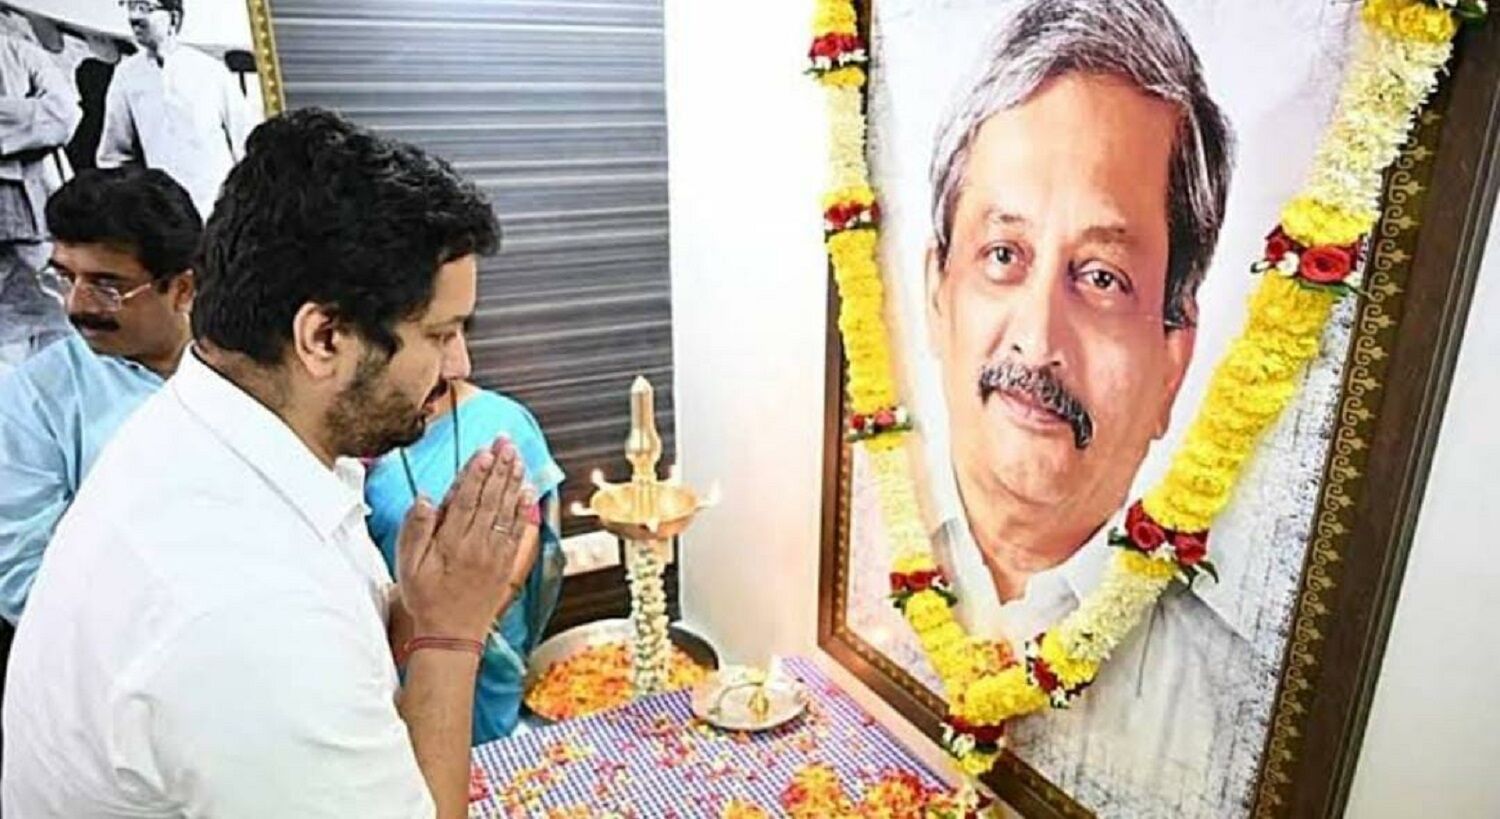 Manohar parrikar son Utpal quits Goa BJP: गोवा के ईमानदार मुख्यमंत्री रहे मोहन पर्रिकर के बेटे उत्पल पर्रिकर ने छोड़ी भाजपा